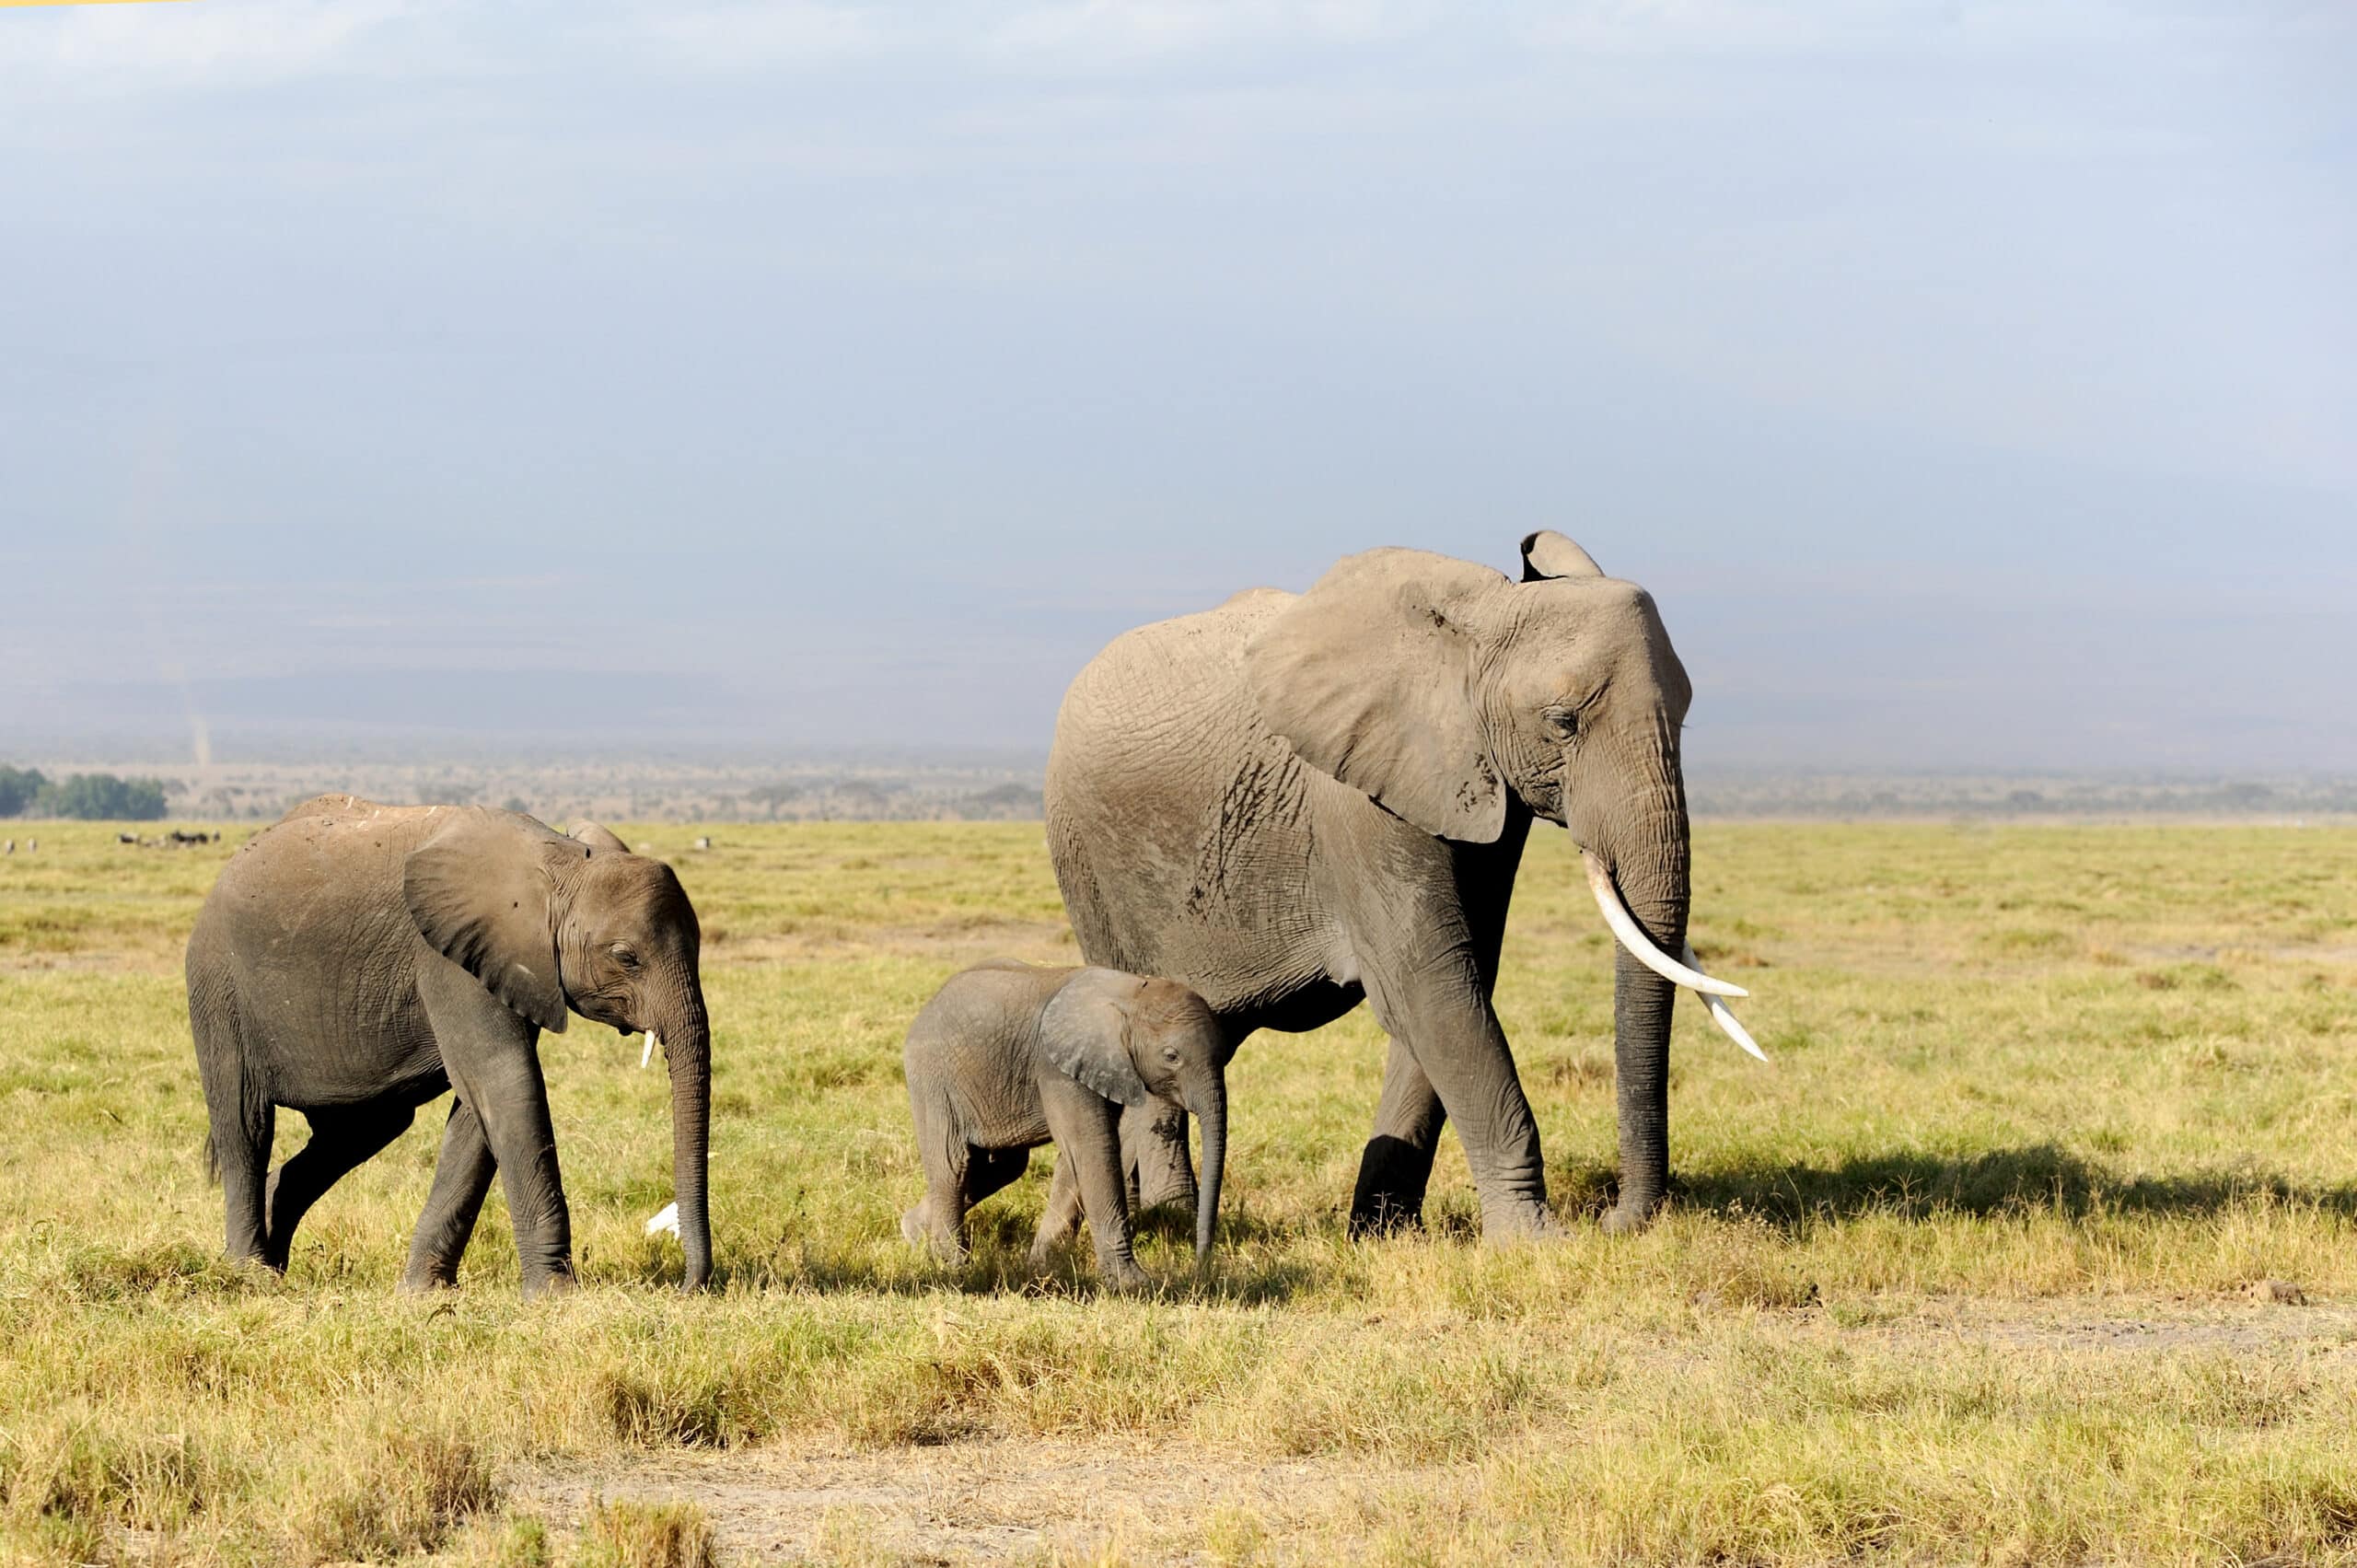 elephant in national park of kenya 2021 08 26 15 55 38 utc 2 scaled